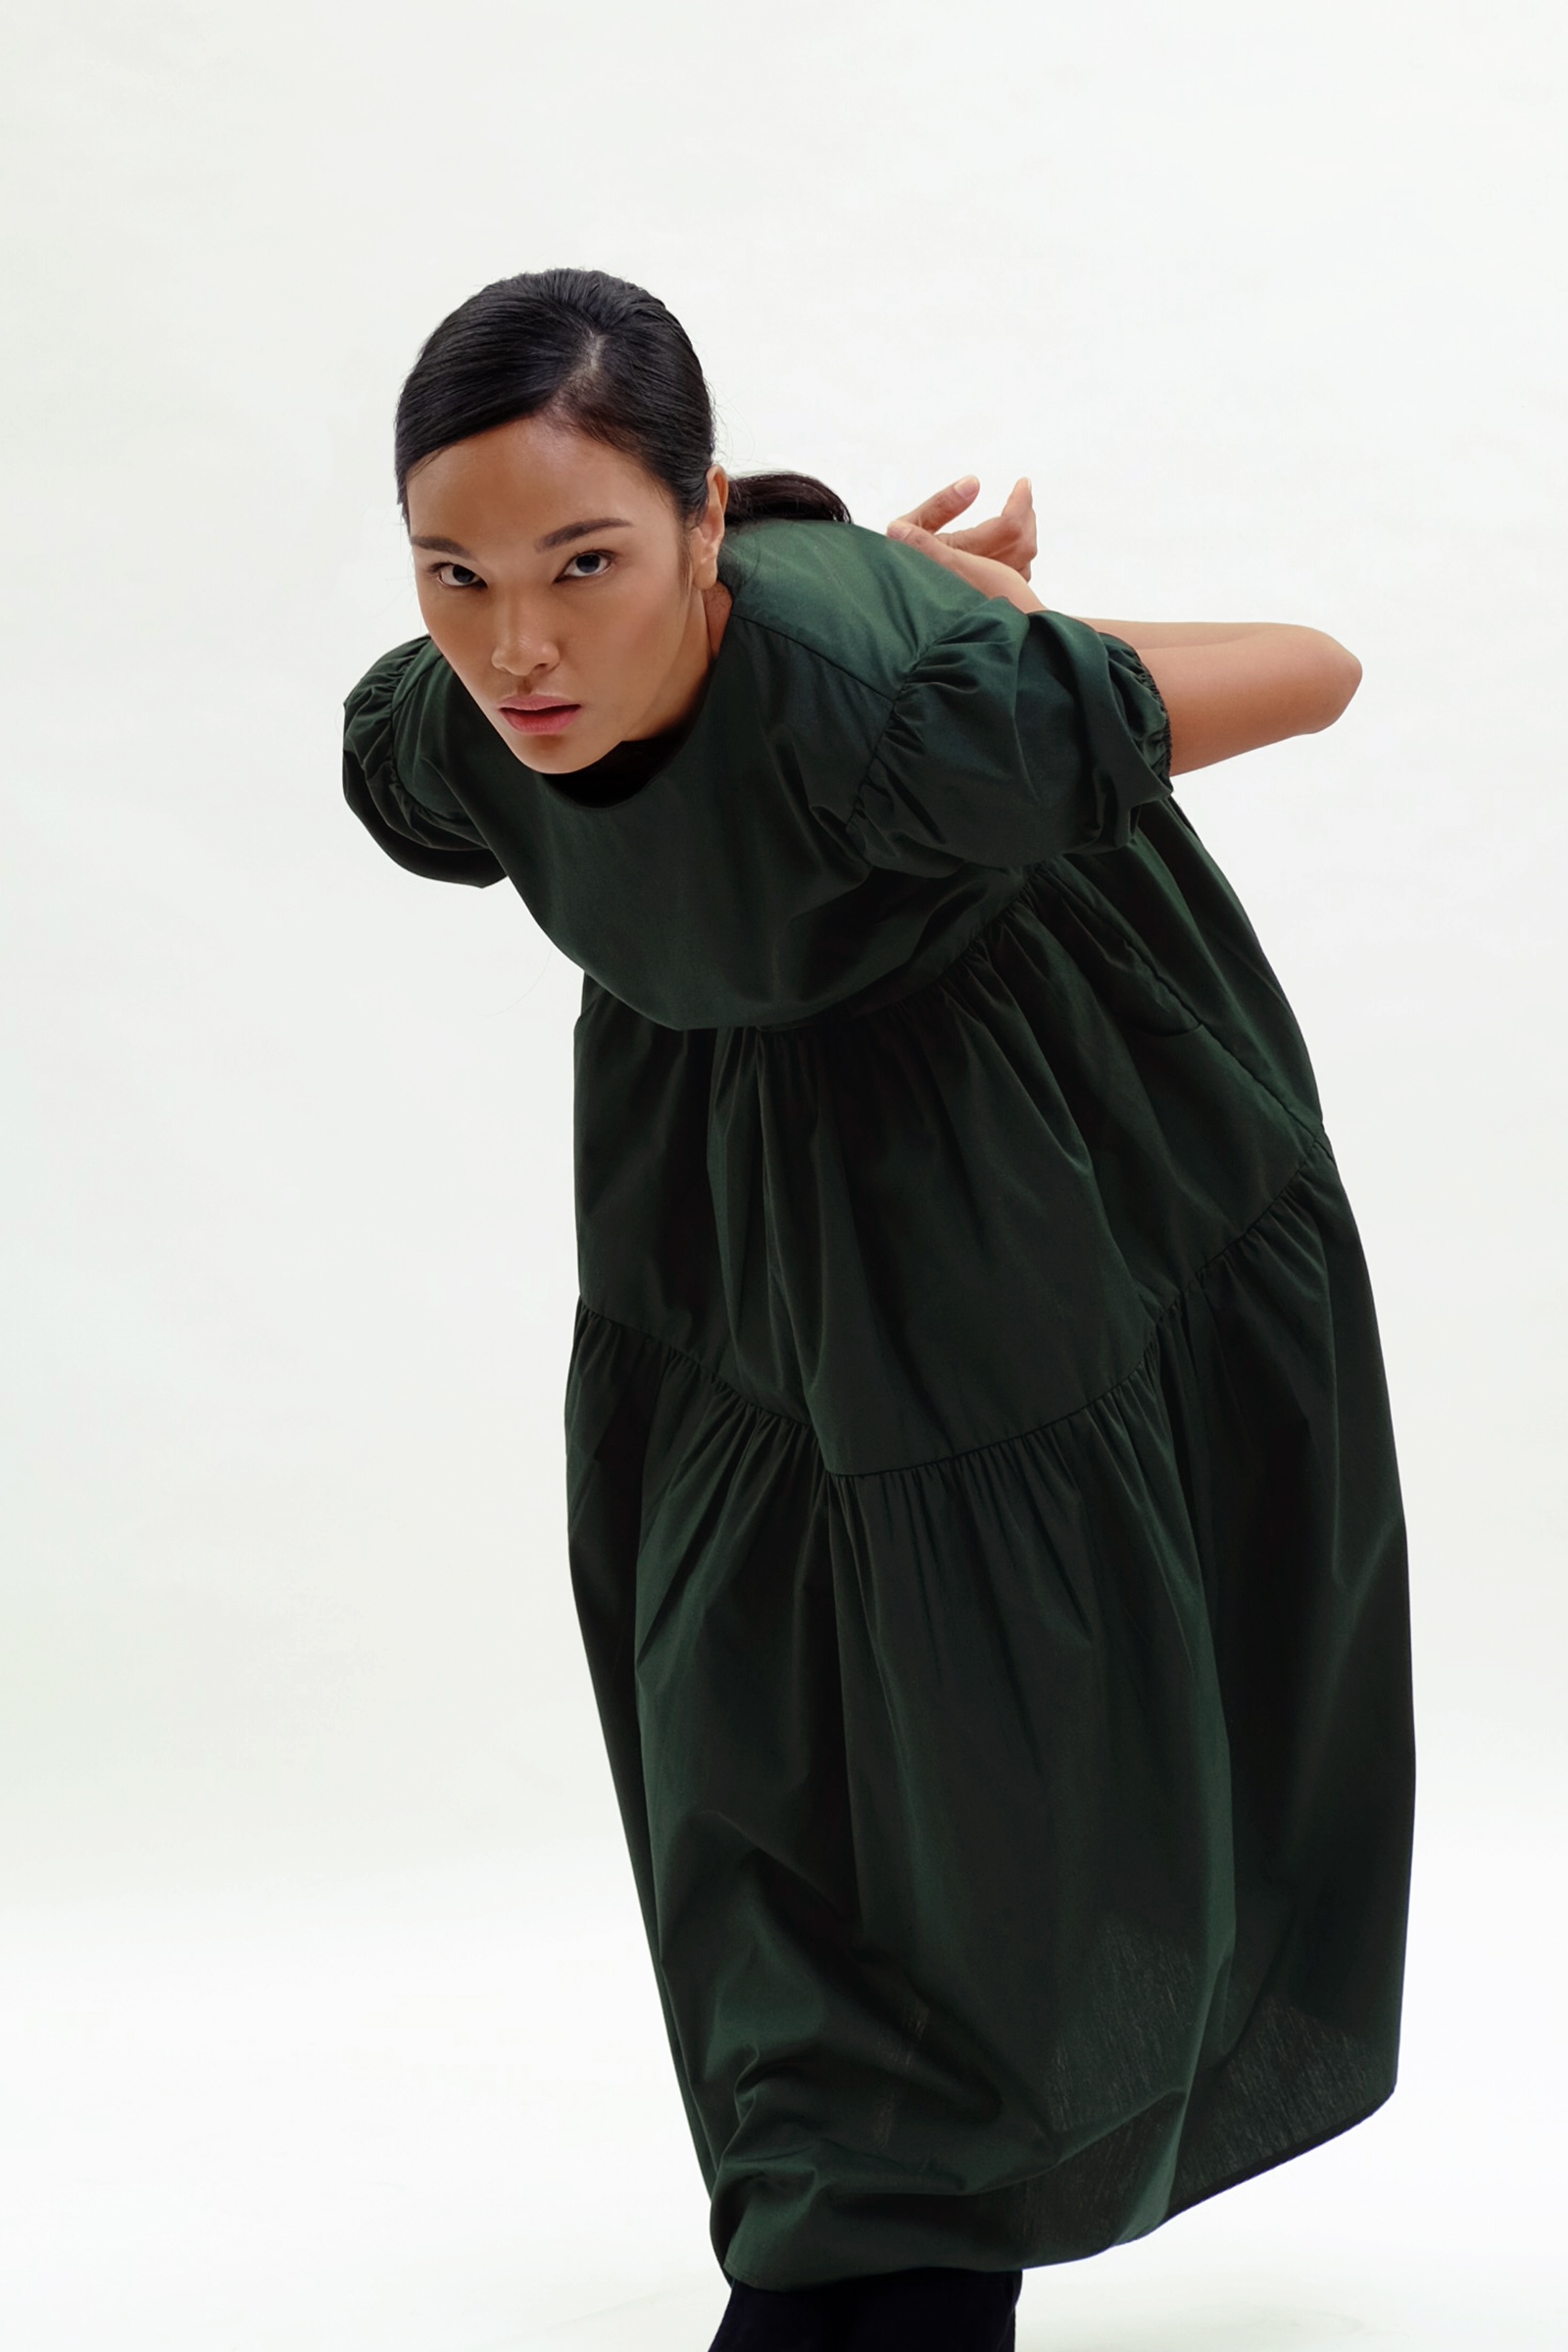 Picture of Demelza Tiered Dress  Fir Green 